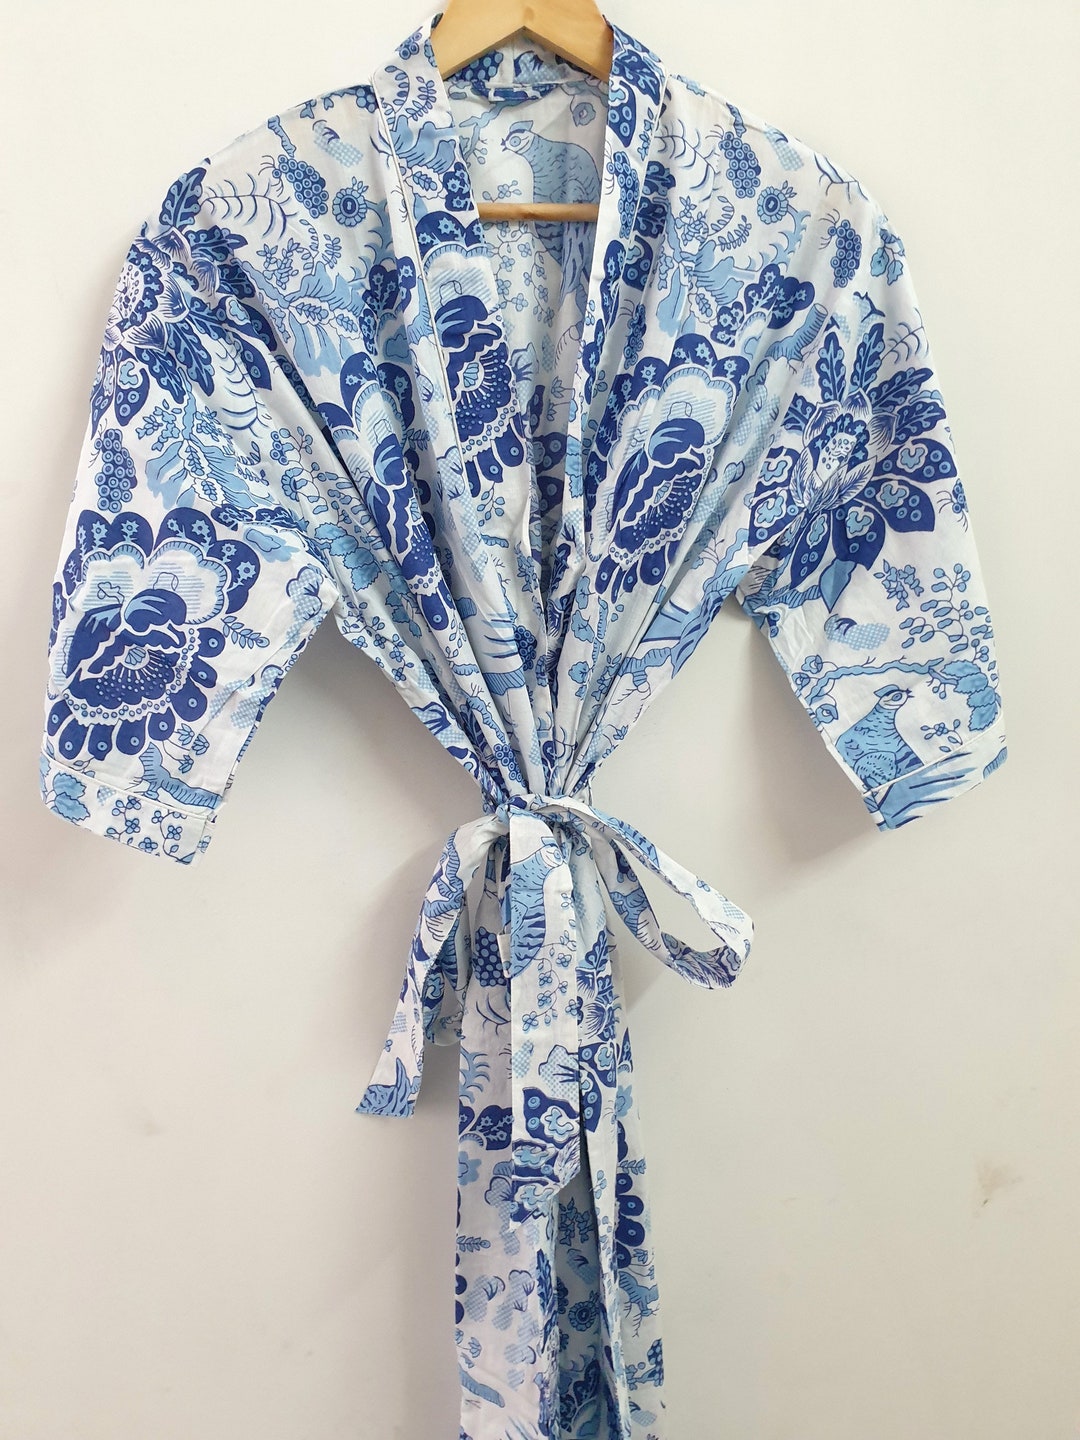 Cotton Kimono Floral Print Kimono Robe Kimono Cover up Bath - Etsy